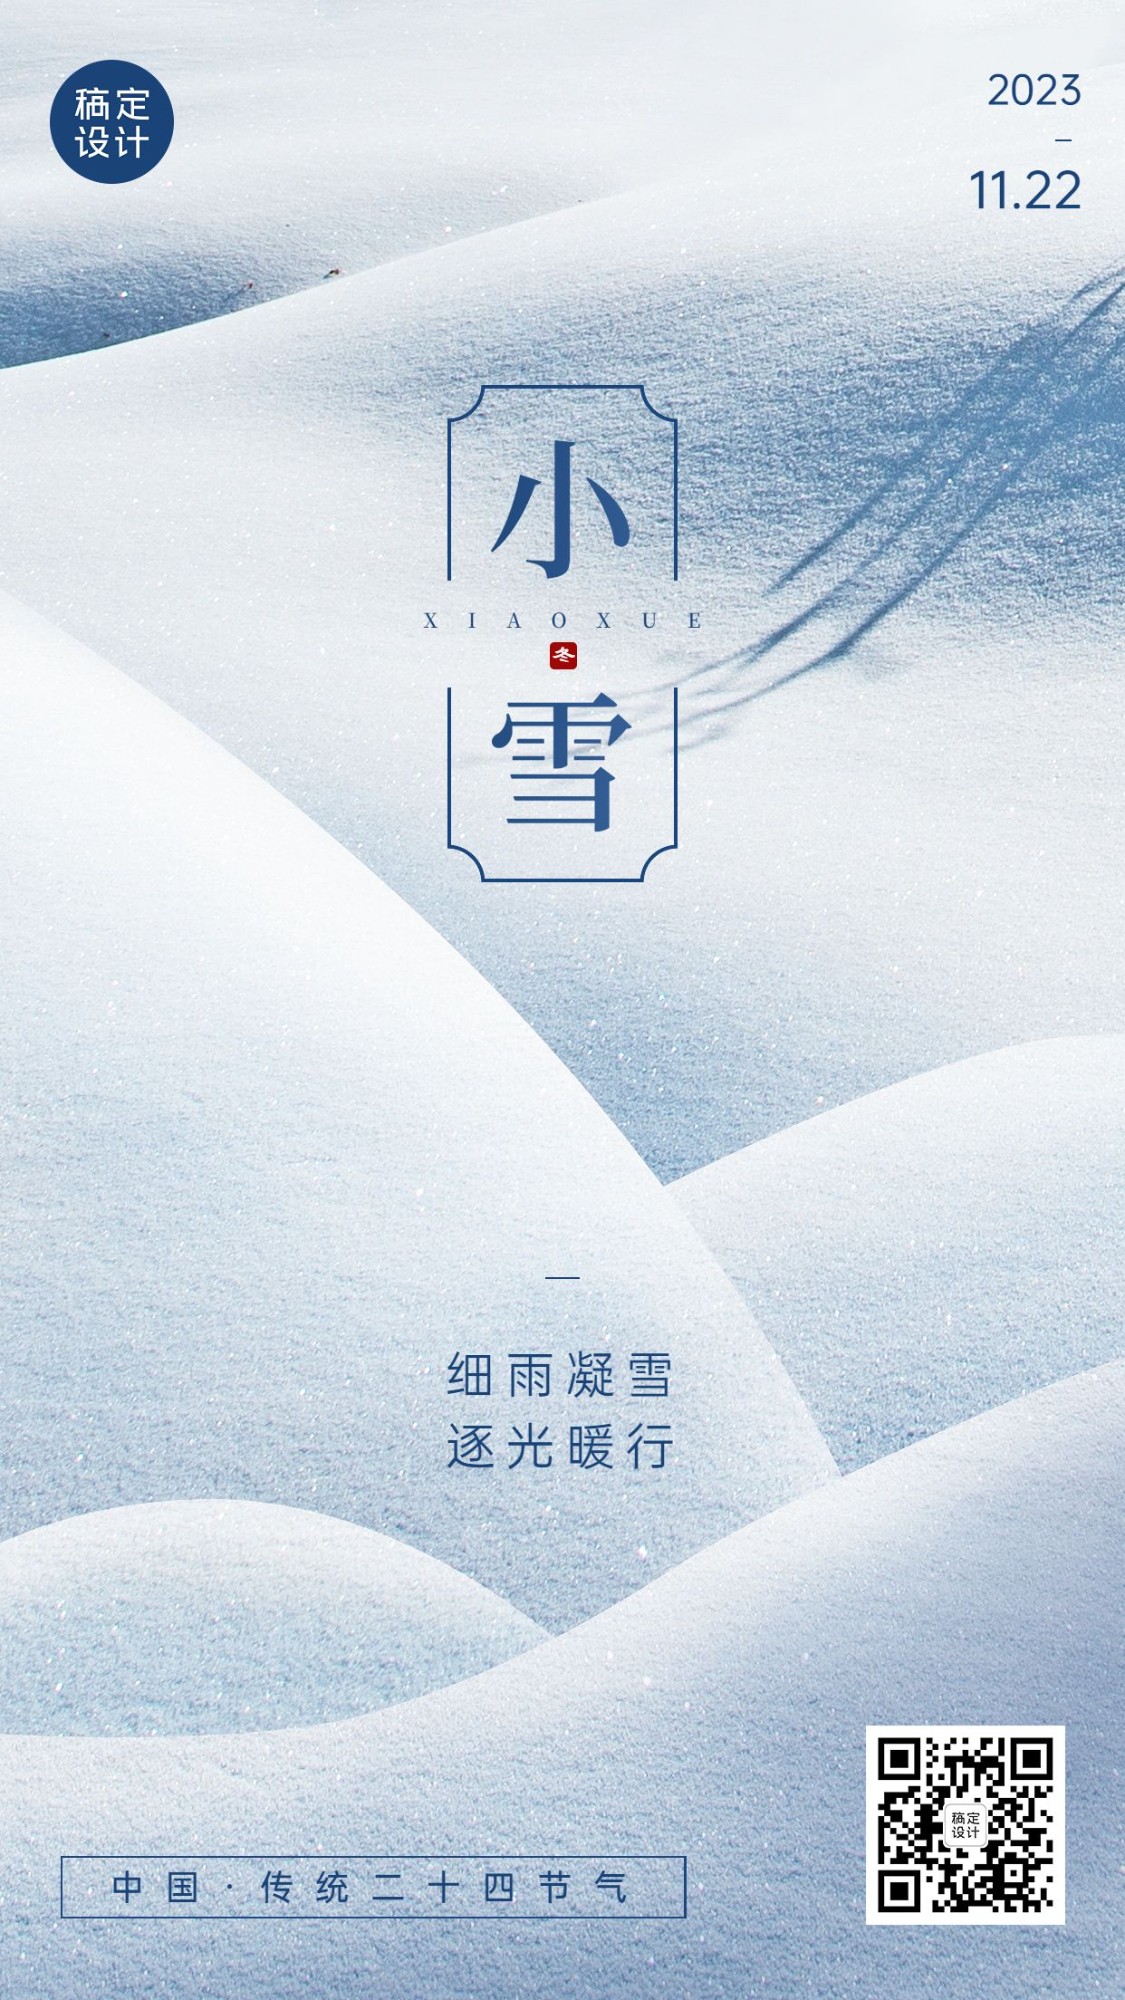 新媒体小雪节气祝福手机海报排版